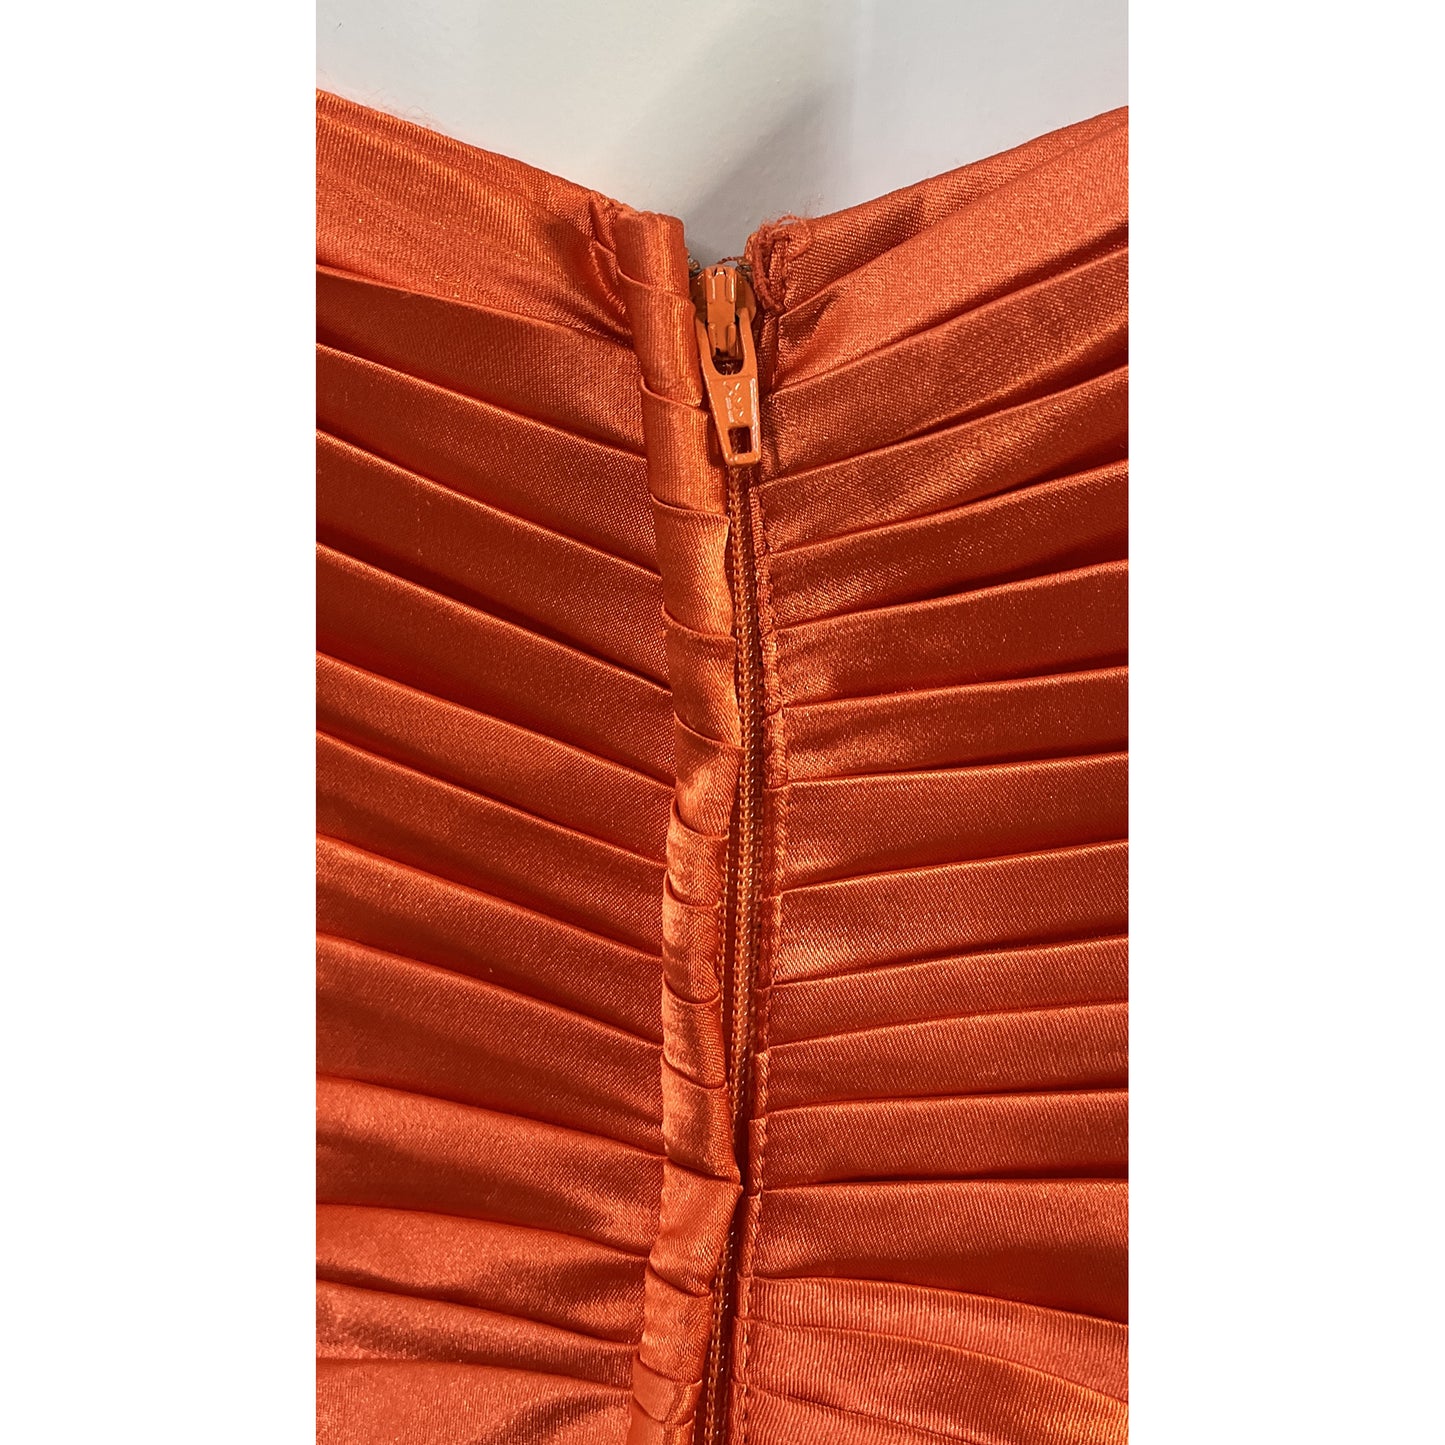 Tony Bowls Le Gala Gown Strapless Rhinestone Embellished Orange Size 4 SKU 000365-3